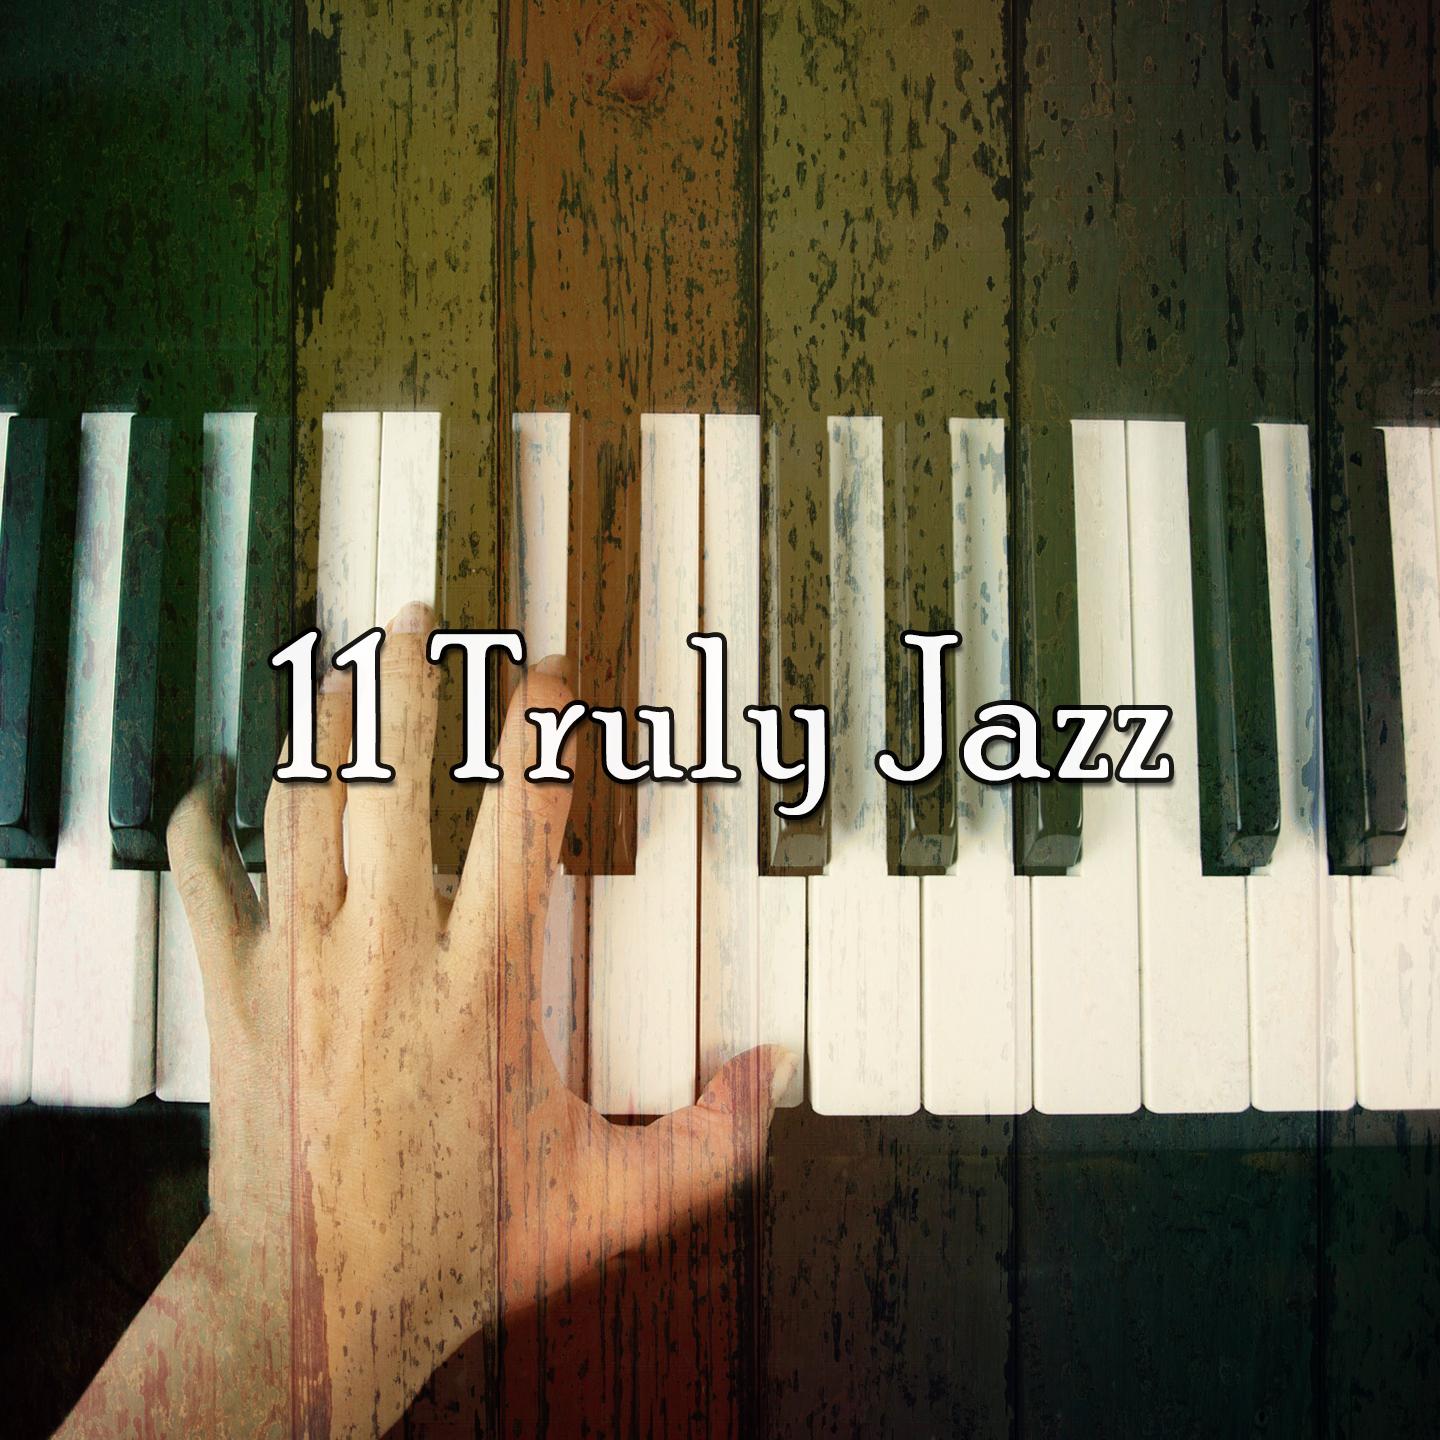 11 Truly Jazz